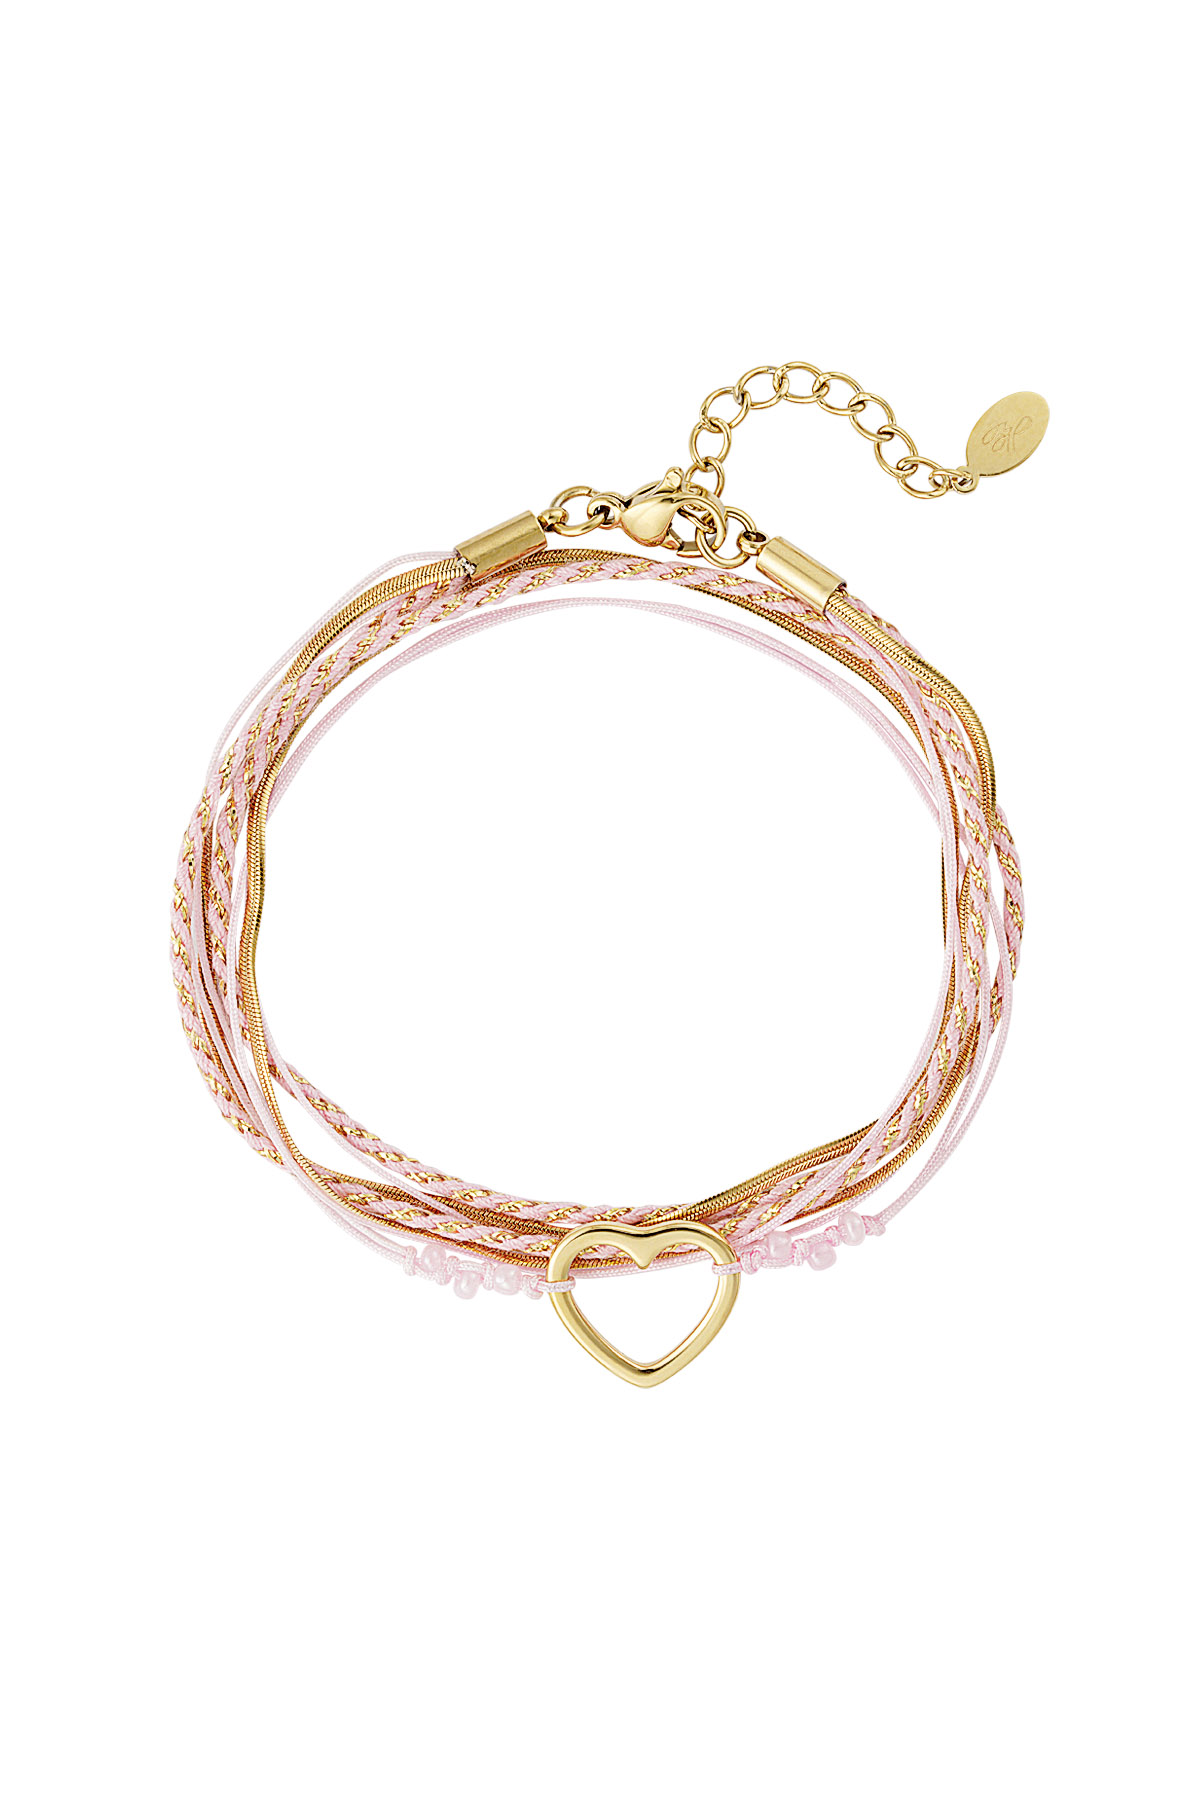 Bracelet summer flow lover - pink gold h5 